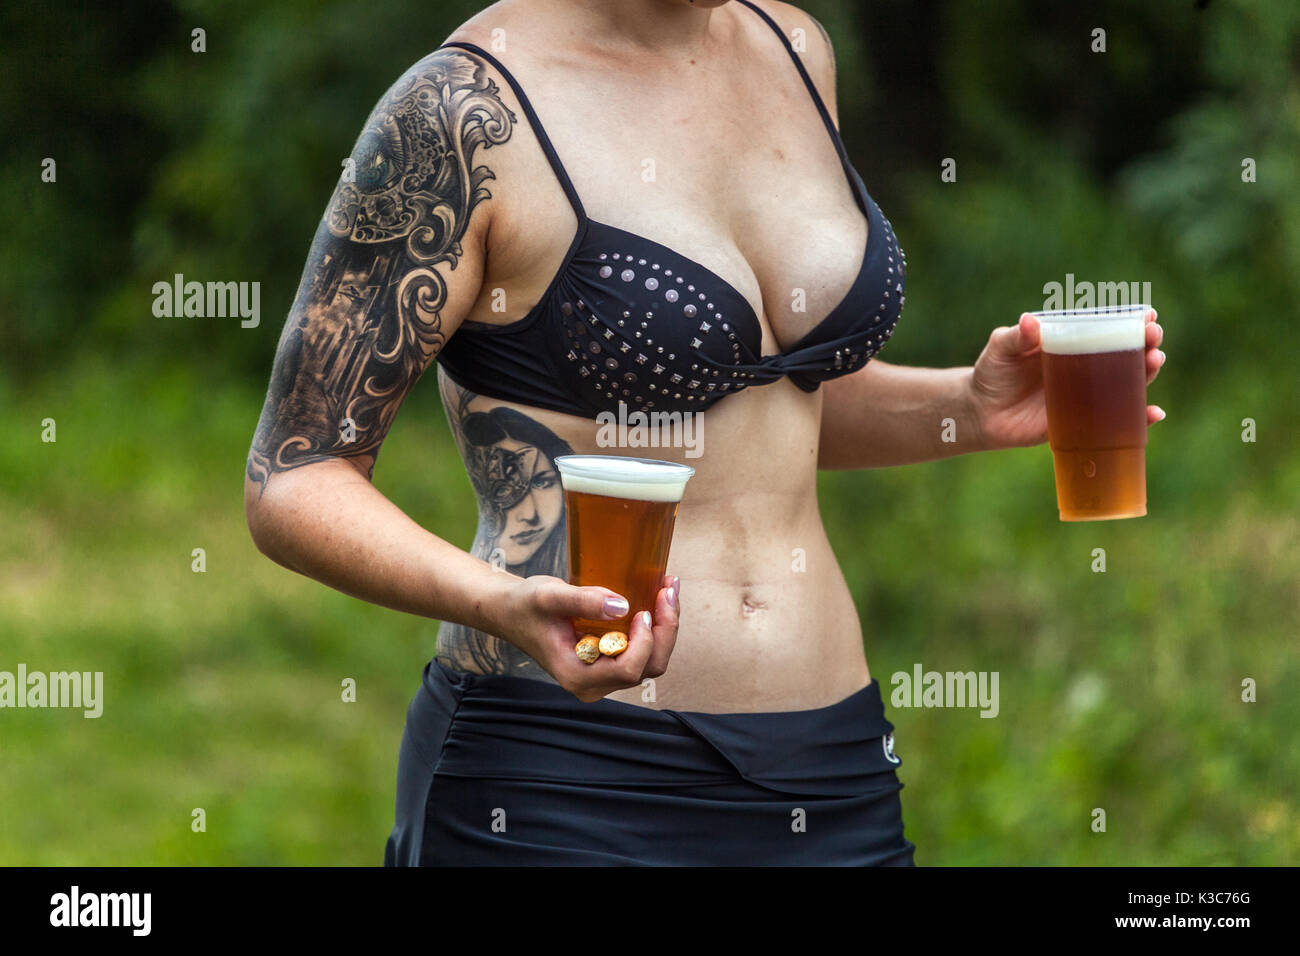 Une jeune femme tatouée porte deux bières dans des gobelets en plastique, des paysages estivaux, des jeunes de la République tchèque de la trentaine Banque D'Images